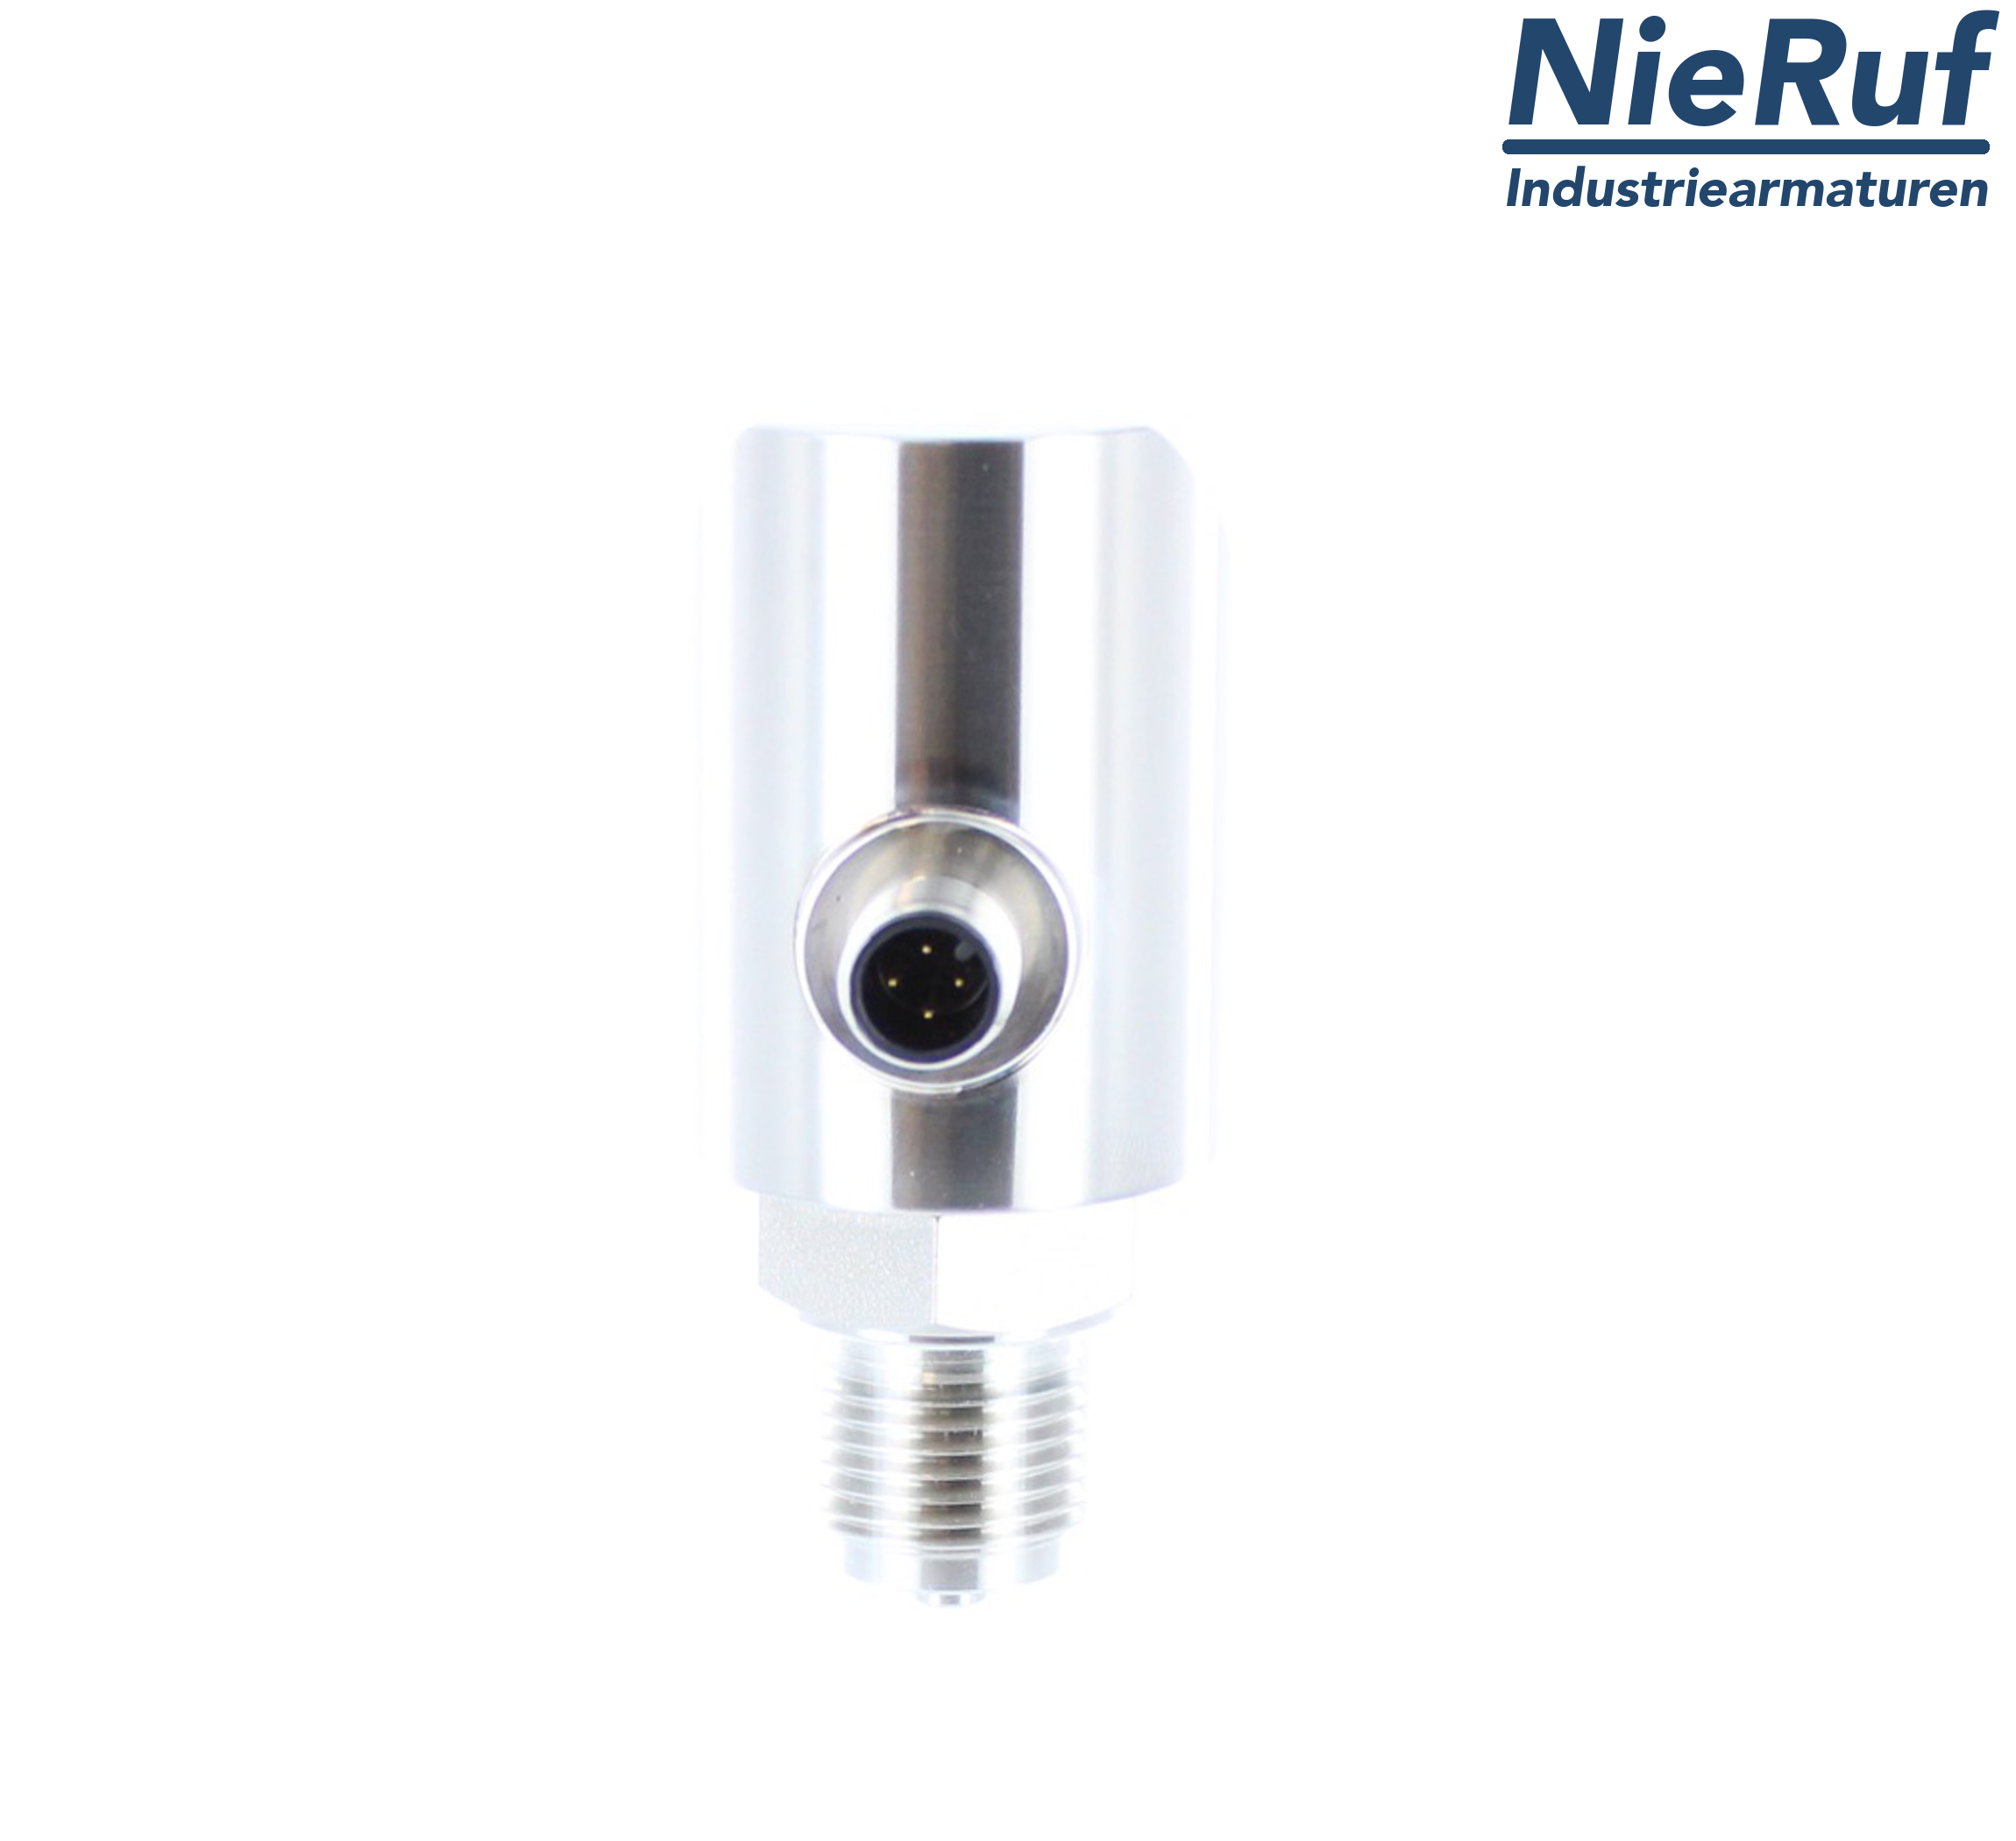 digital pressure sensor G 1/2" B IB 4-wire: 1xPNP, 1x4 - 20mA, Desina FPM 0,0 - 6,0 bar